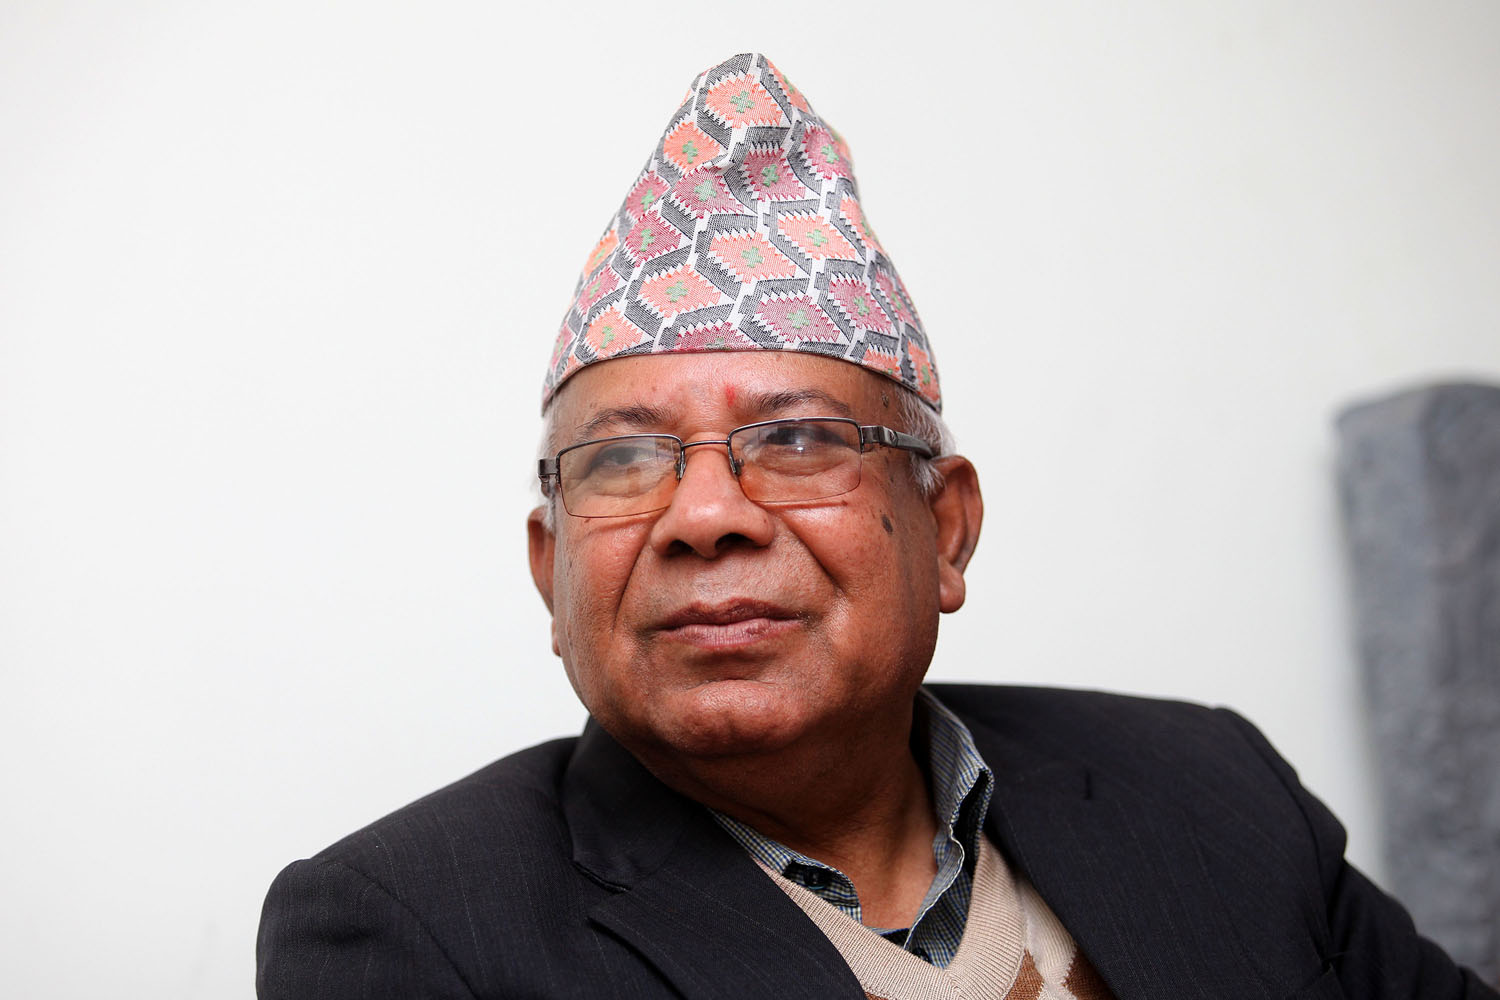 रास्वपालाई पहिले पनि सरकारमा ल्याउने सहमति भइसकेको थियो, गठबन्धनमा टुङ्गो लगाइनेछ : माधवकुमार नेपाल